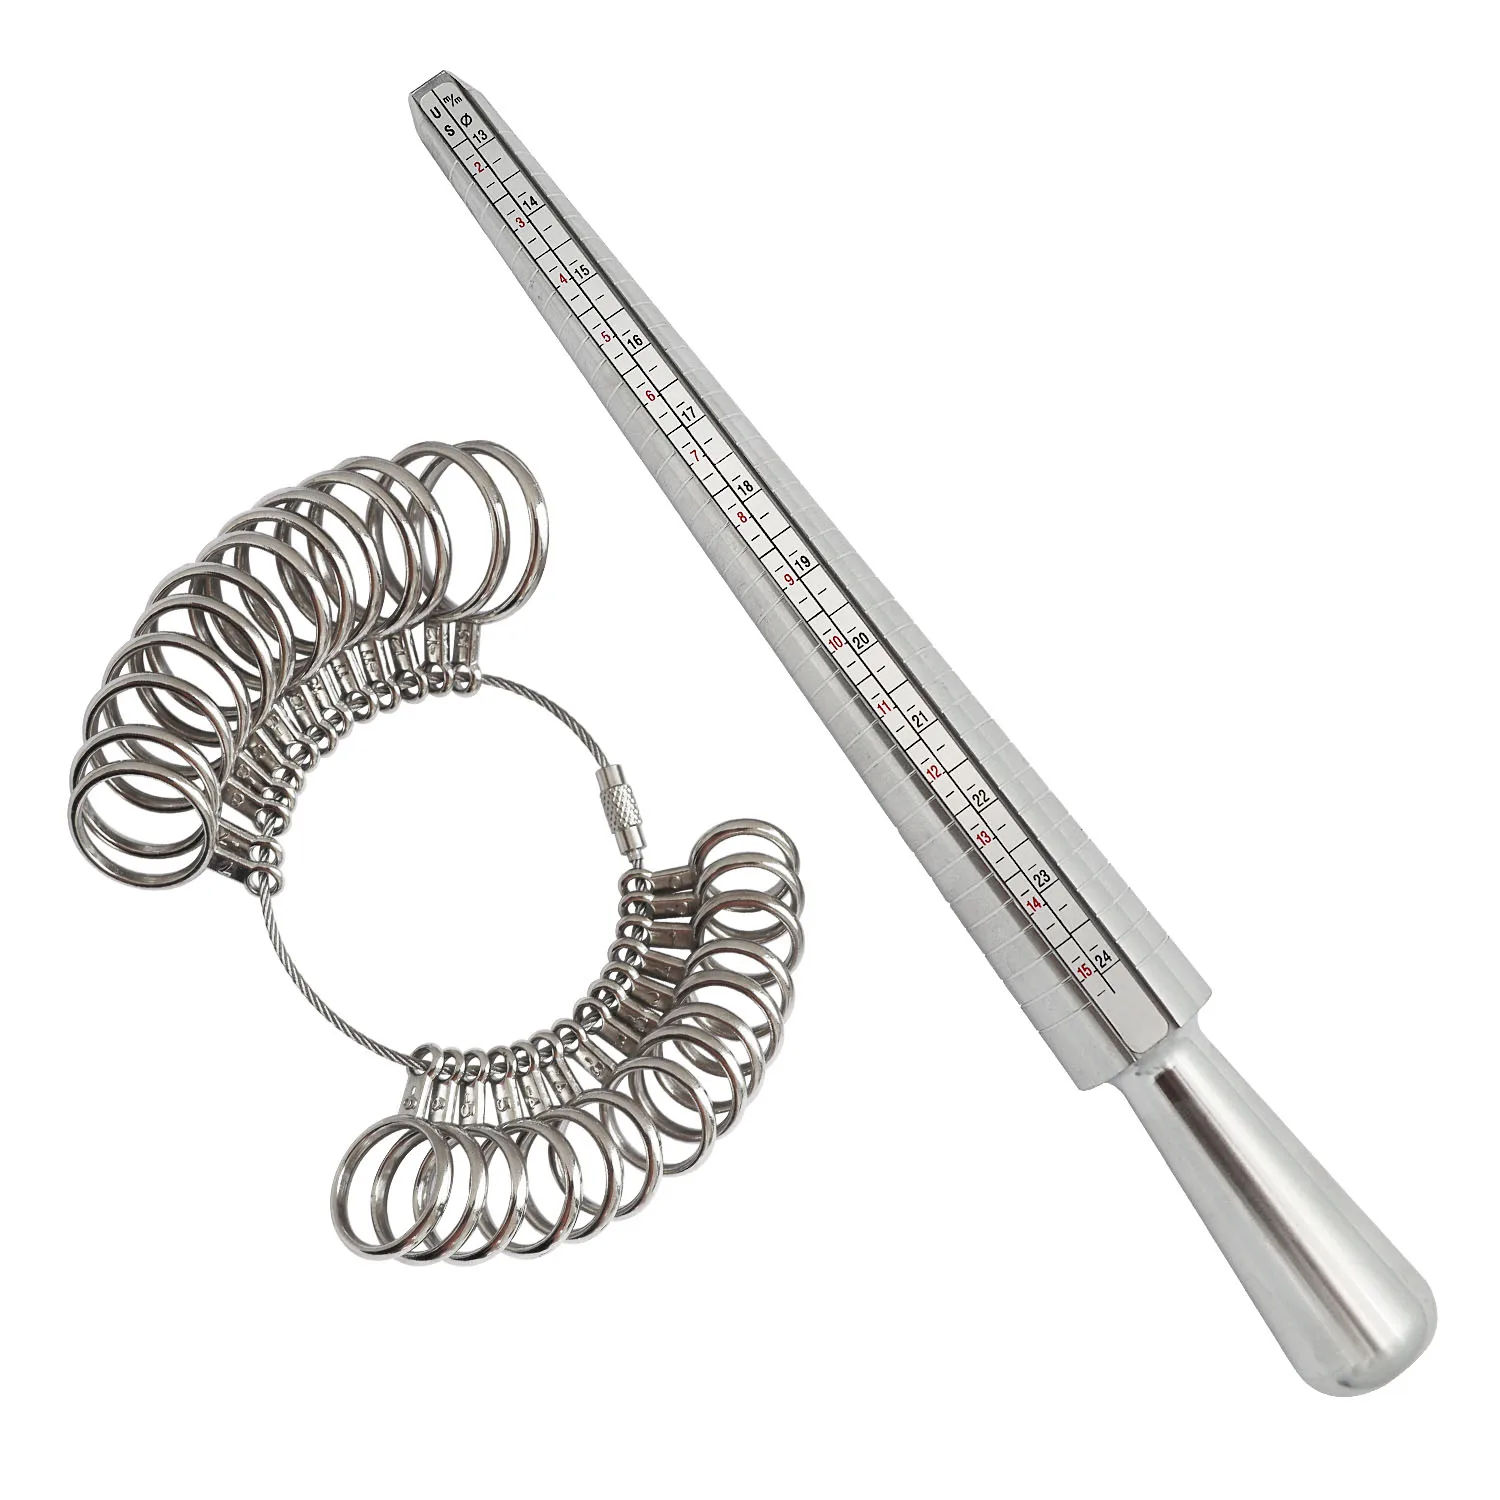 

Набор измерительных инструментов для ювелирных изделий, Измерительный набор колец 1-13 размеров США с круглыми наконечниками